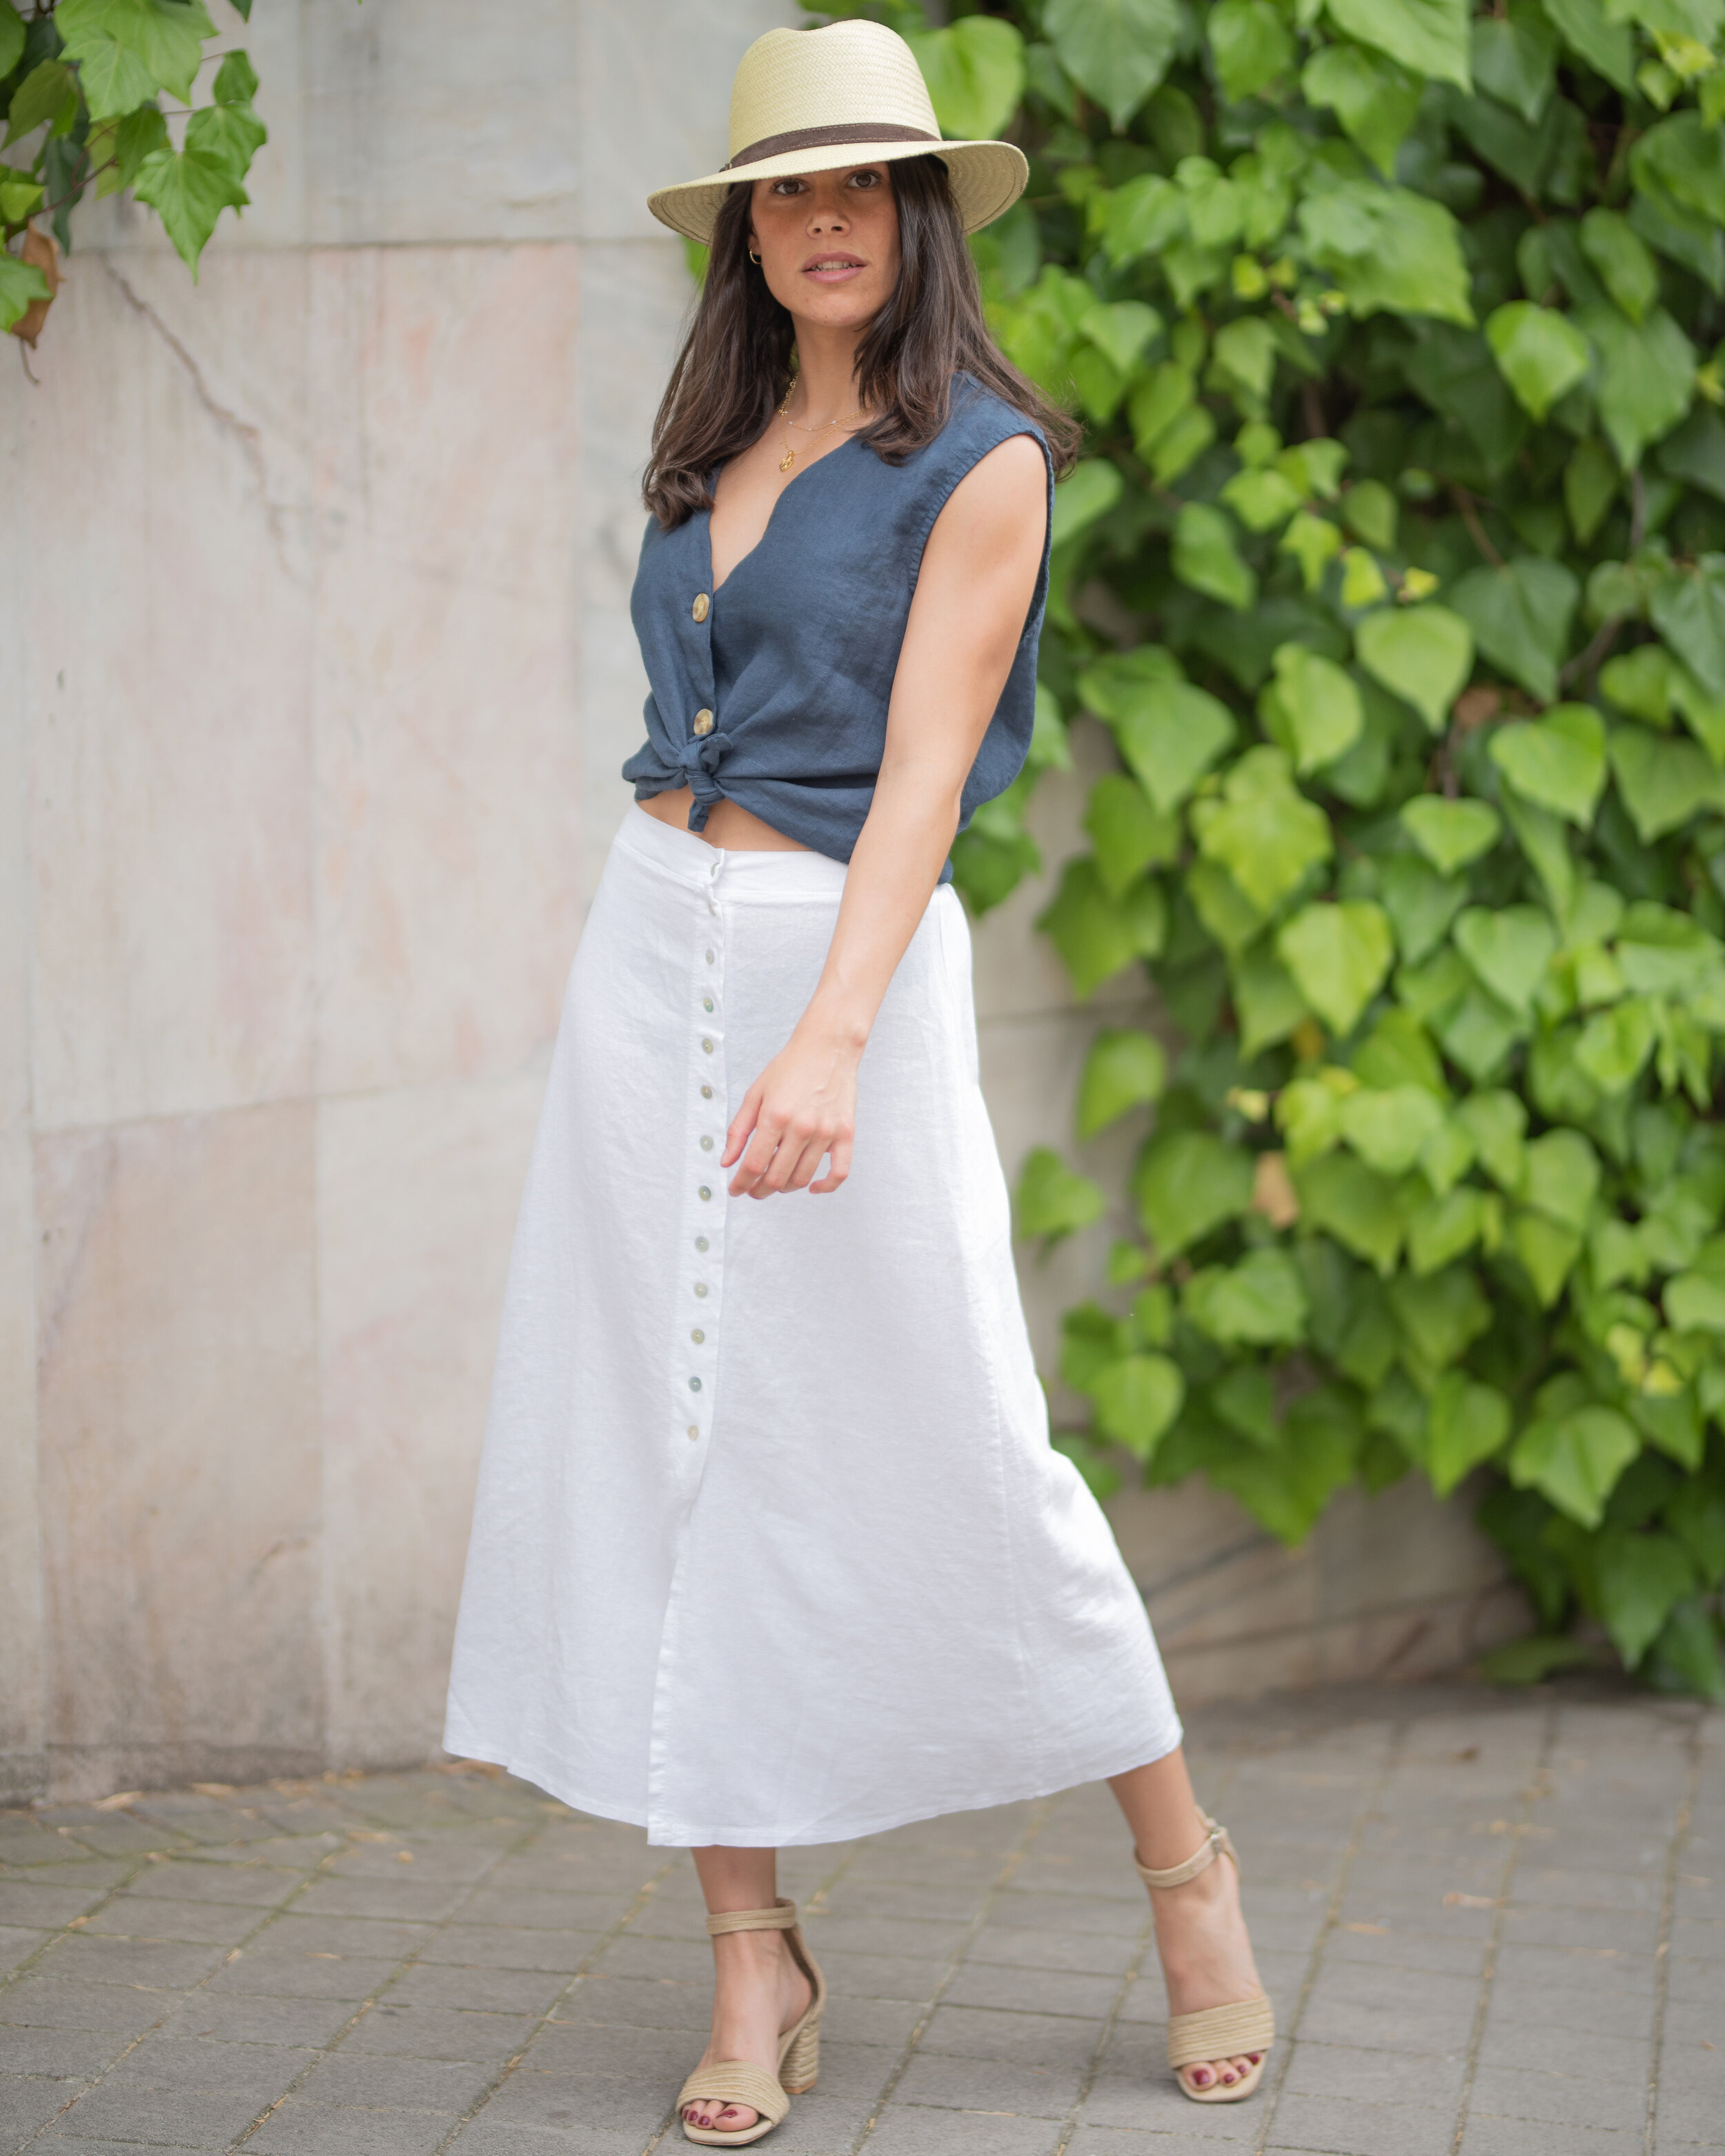 Cómo combinar una falda blanca larga — Jand | Ropa de Mujer